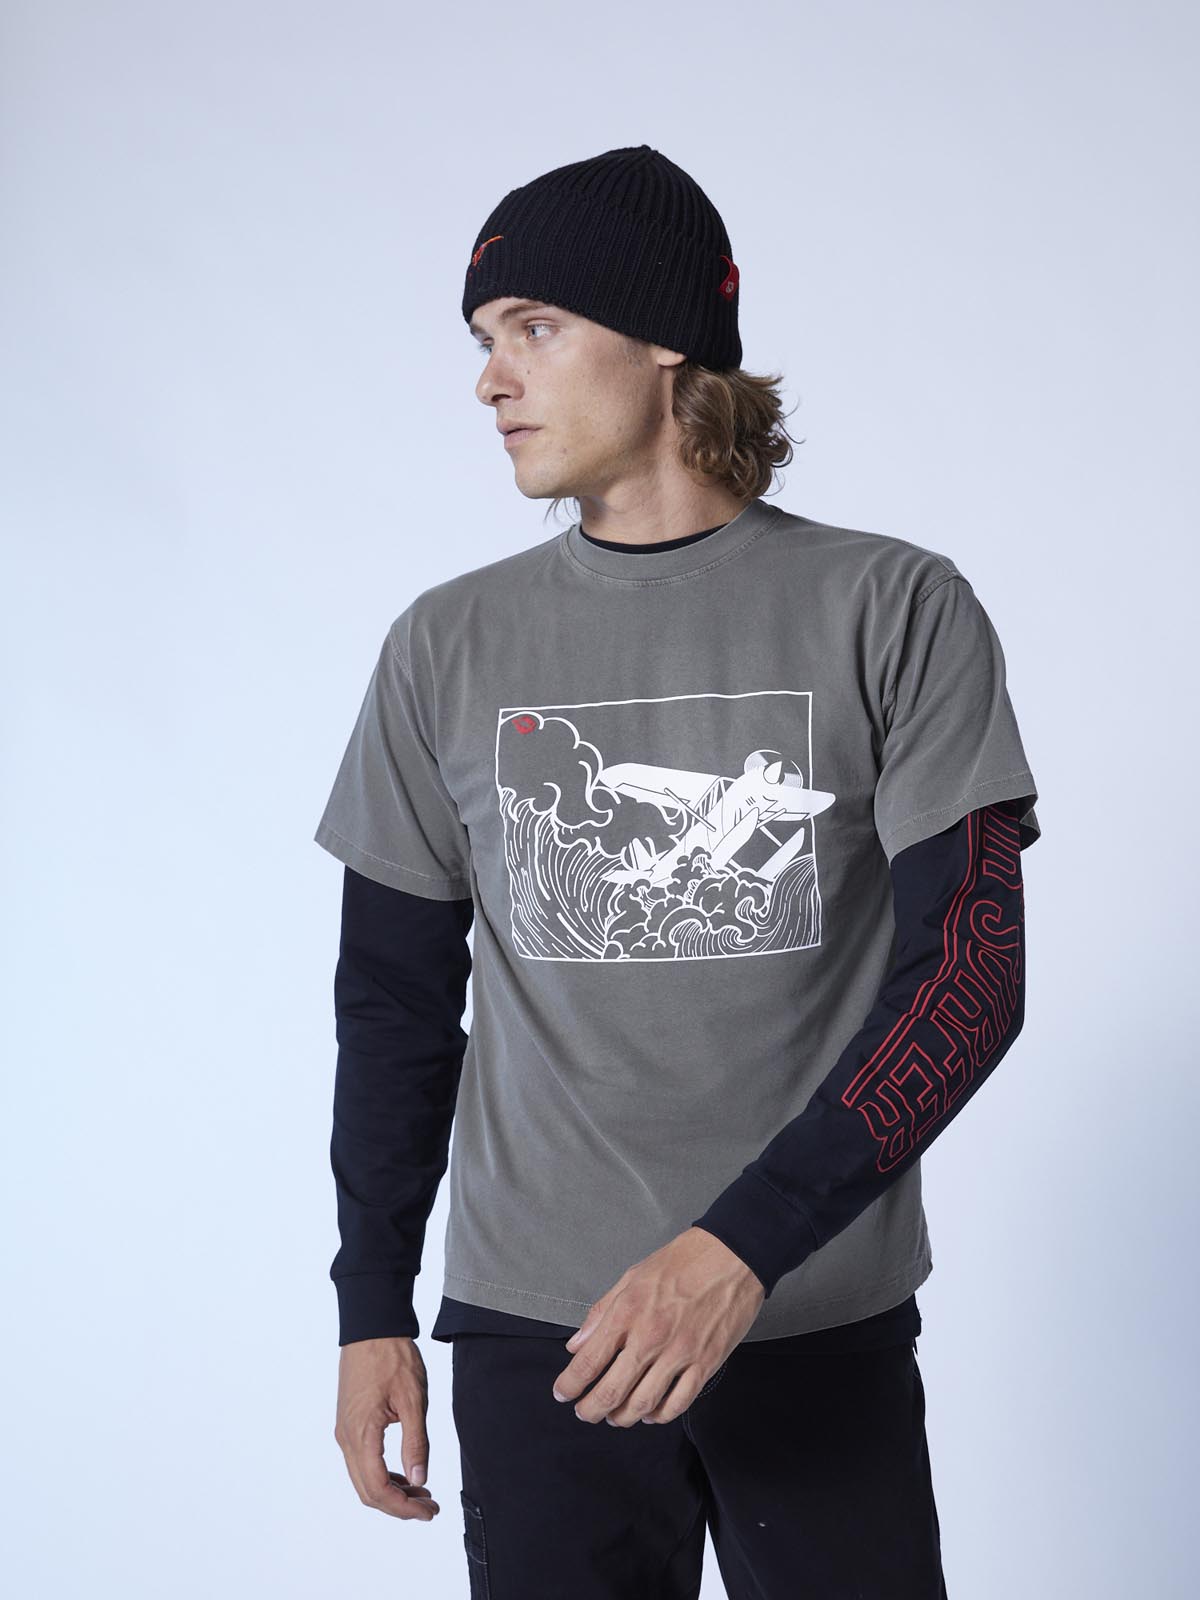 Kona Hokusai Air Surfer print T-shirt